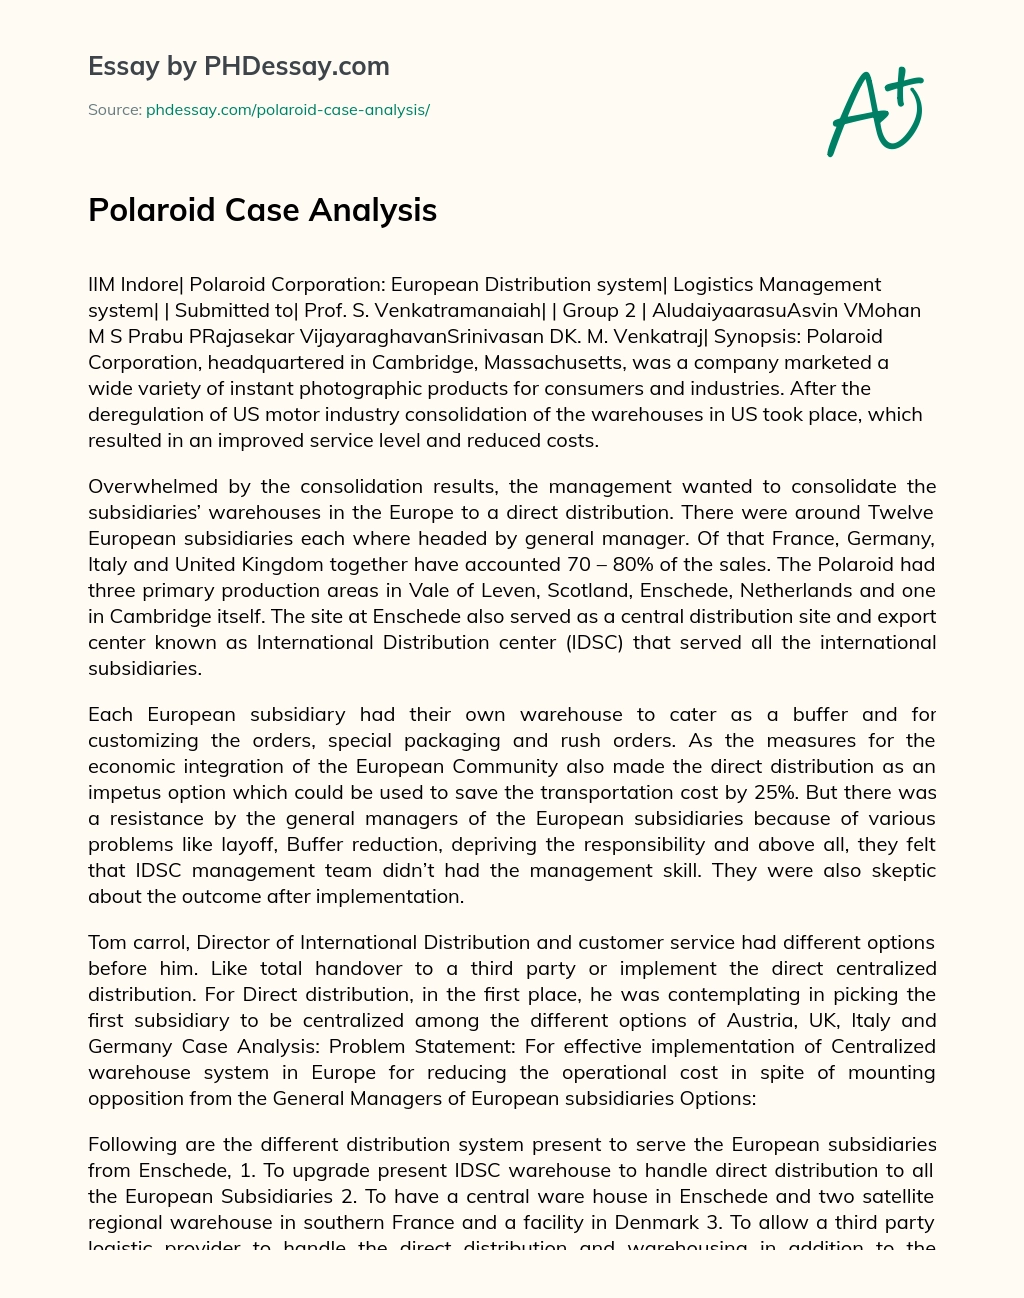 Polaroid Case Analysis essay